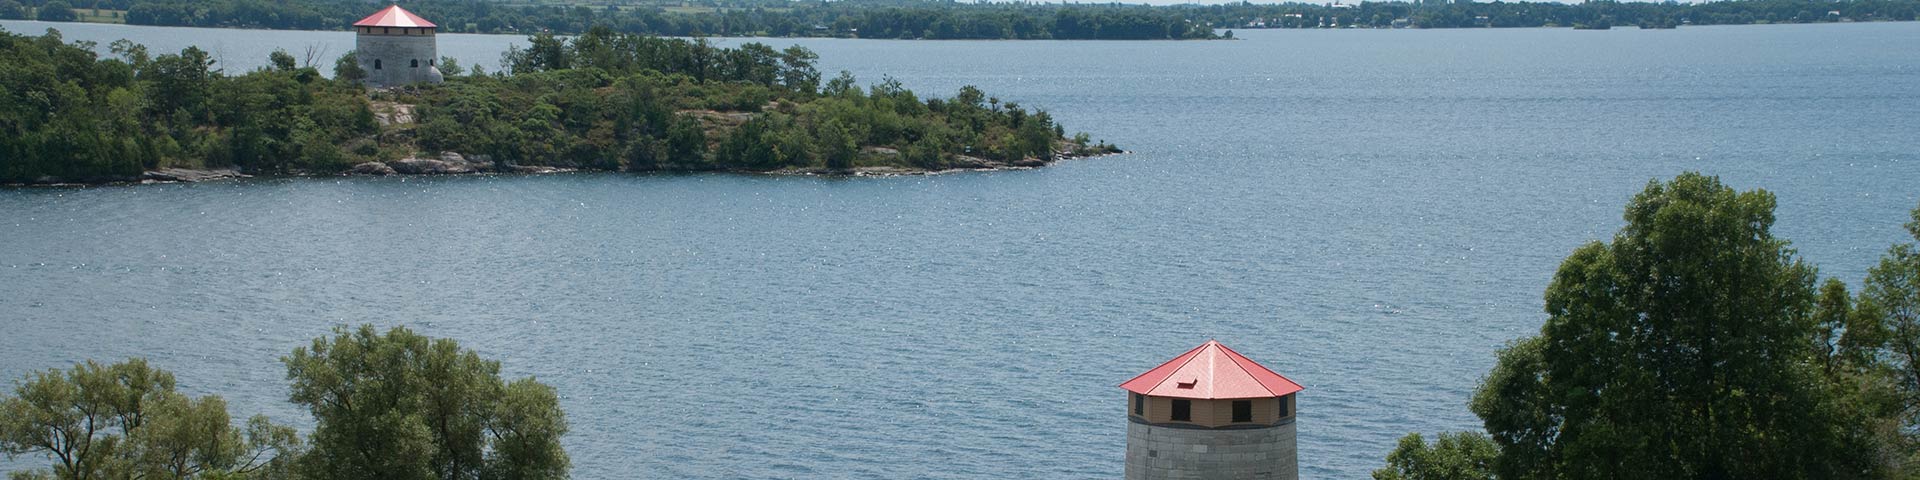 Les murs de pierre des fortifications de Kingston sur le fleuve Saint-Laurent.